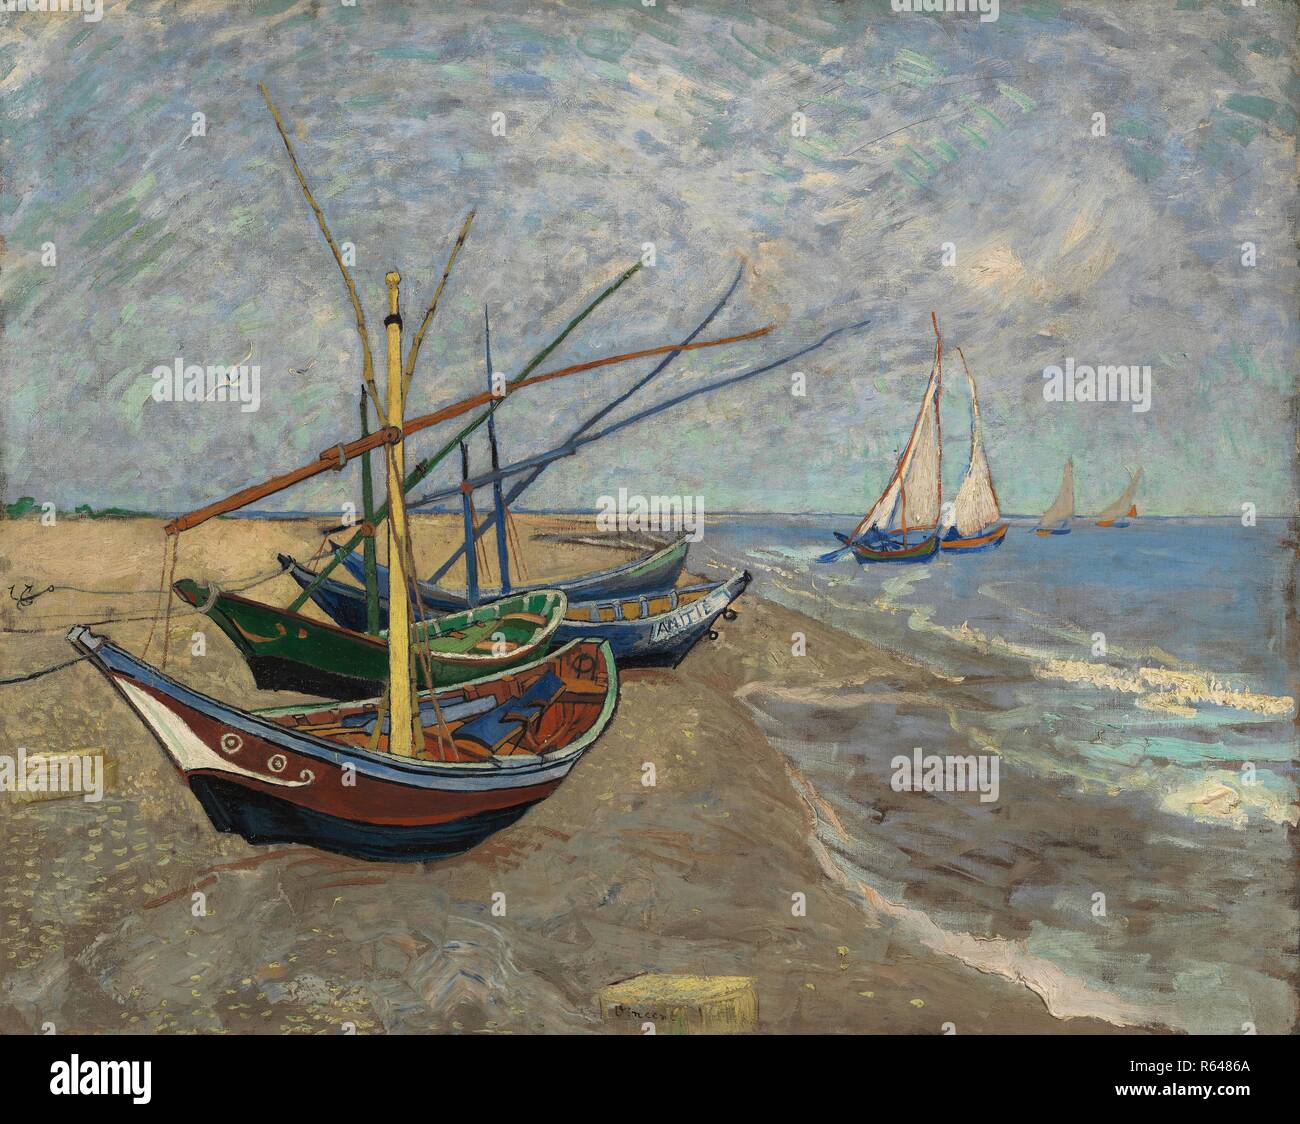 Barche di pescatori sulla spiaggia di Les Saintes-Maries-de-la-Mer. Data: giugno 1888, Arles. Dimensioni: 65 cm x 81,5 cm, 82,5 cm x 98,2 cm. Museo: Van Gogh Museum di Amsterdam. Autore: Van Gogh, Vincent. VINCENT VAN GOGH. Foto Stock